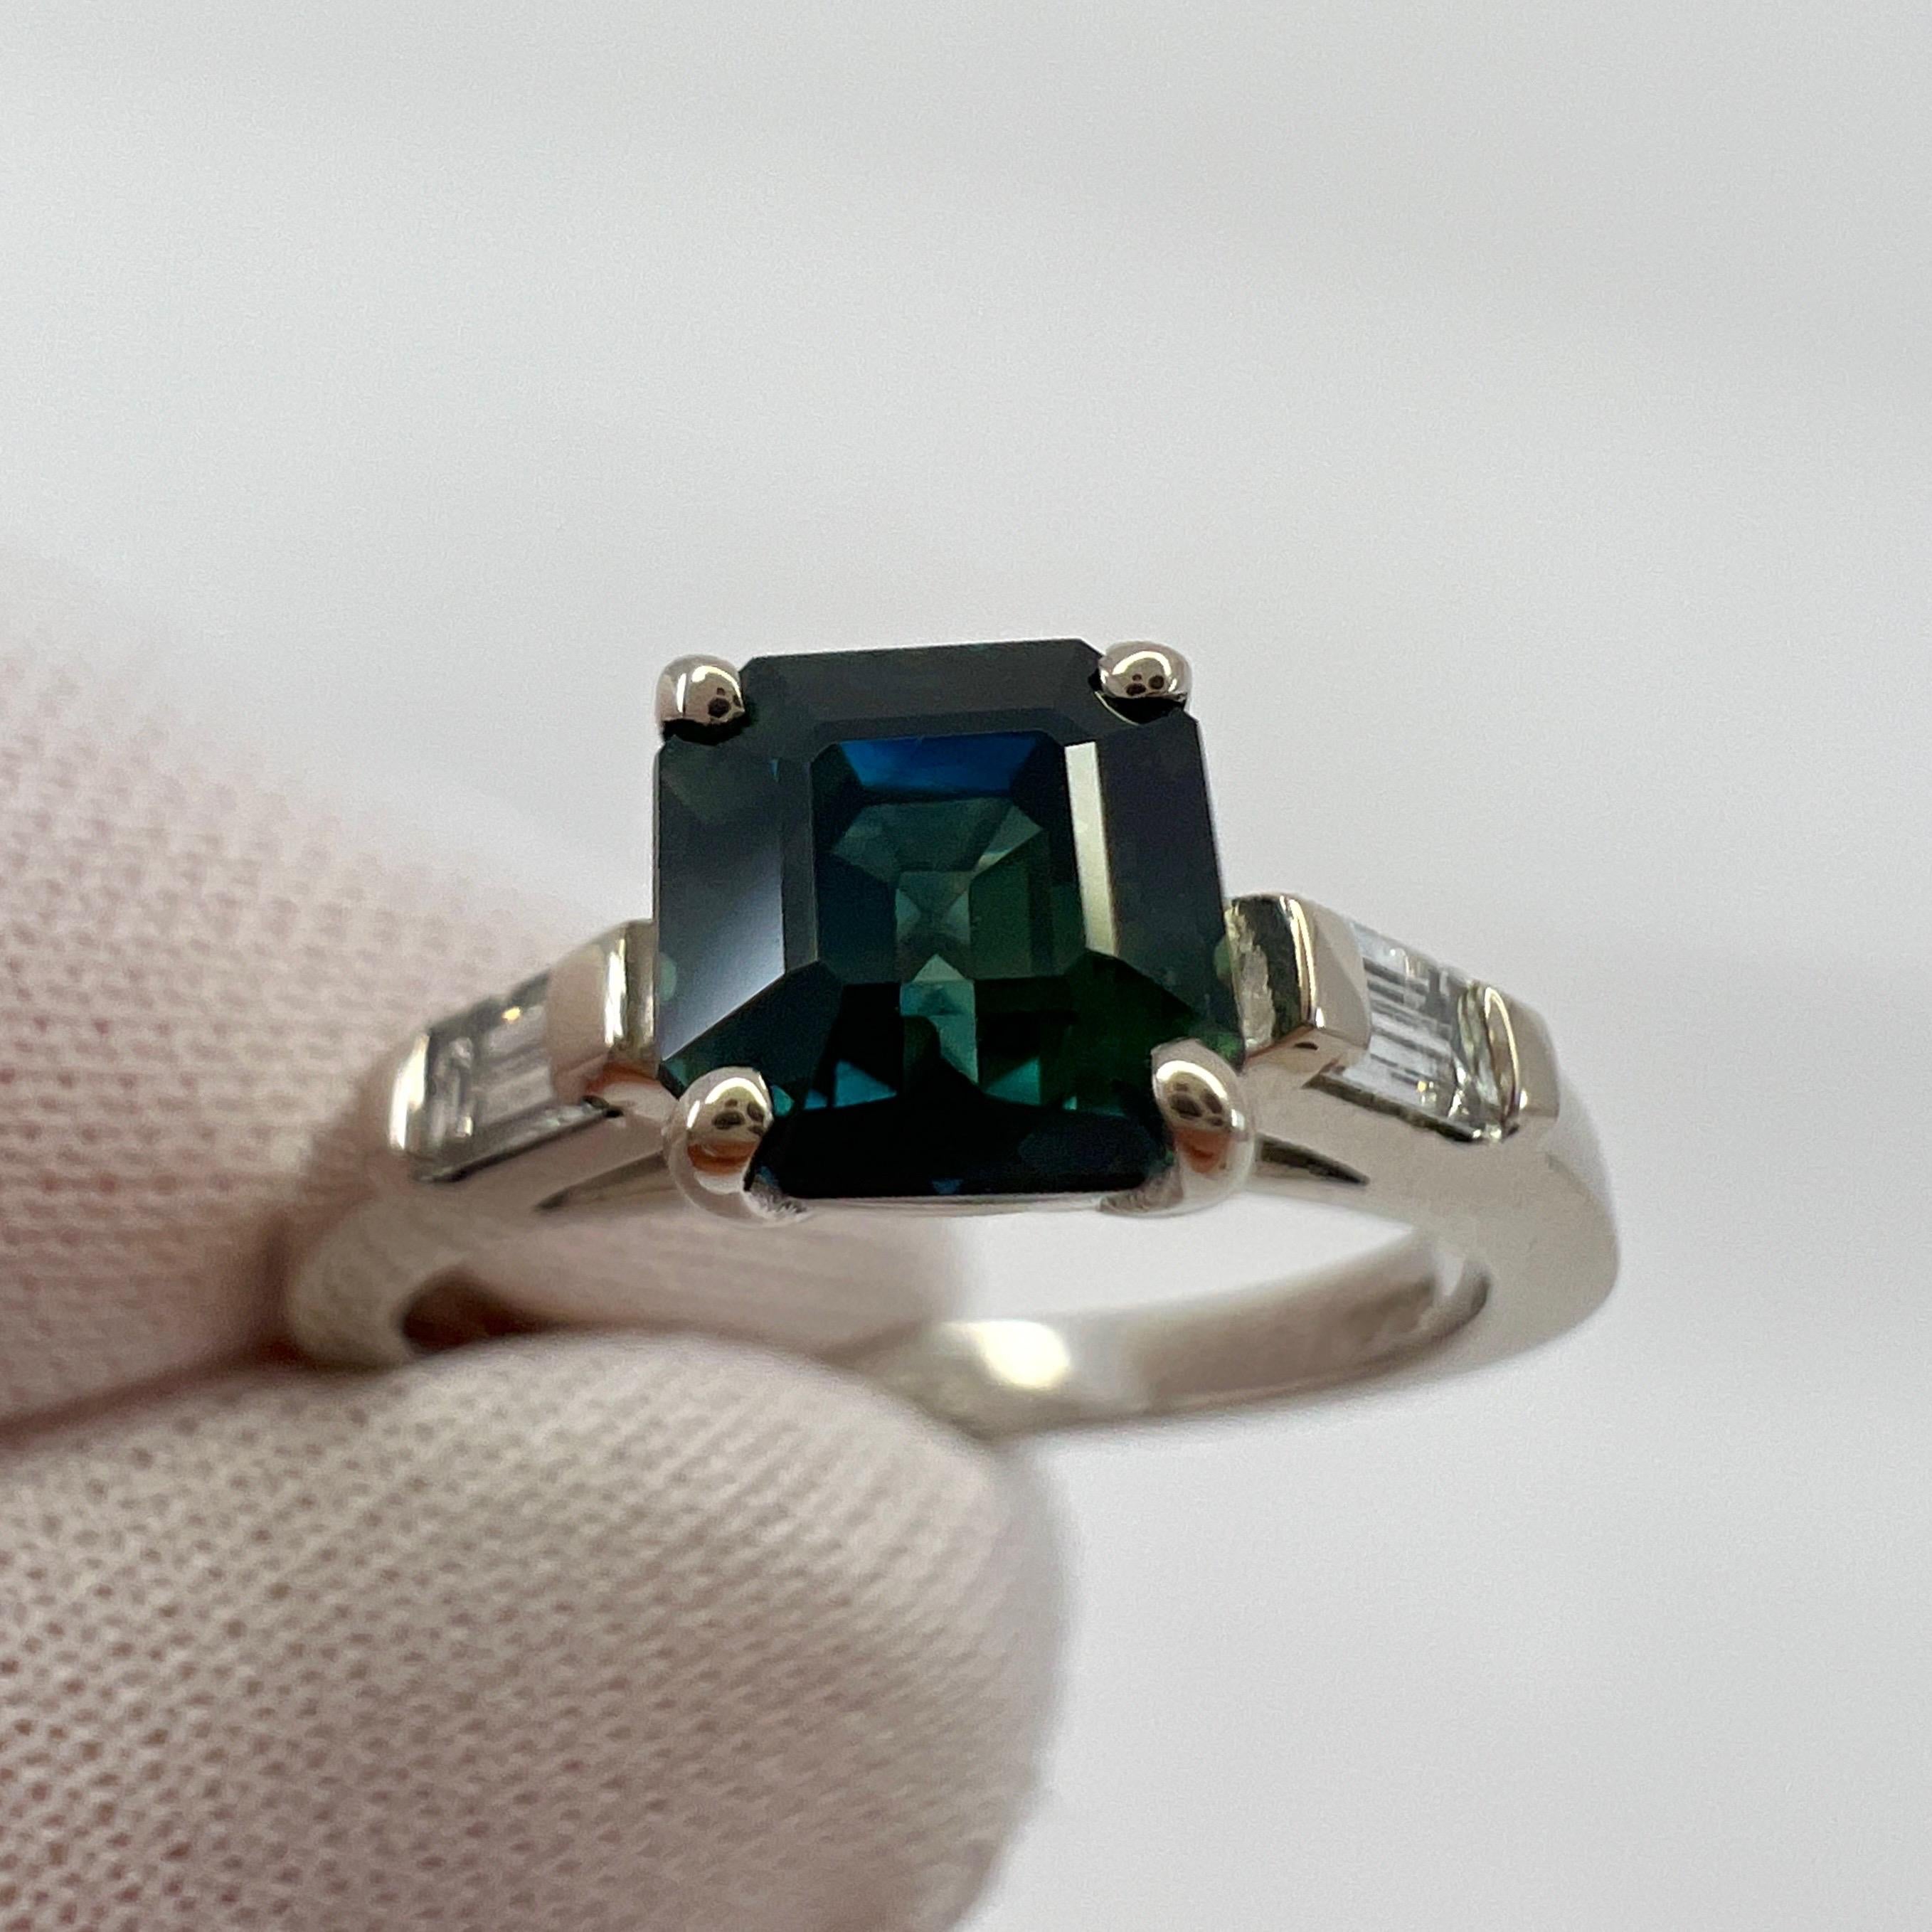 GIA zertifiziert Deep Blue unbehandelten australischen Saphir & Diamant 18k Weißgold Drei Stein Ring.

Seltener GIA-zertifizierter australischer Saphir von 1,31 Karat mit einer atemberaubenden tiefblauen Farbe. Leicht grünliche Untertöne und ein